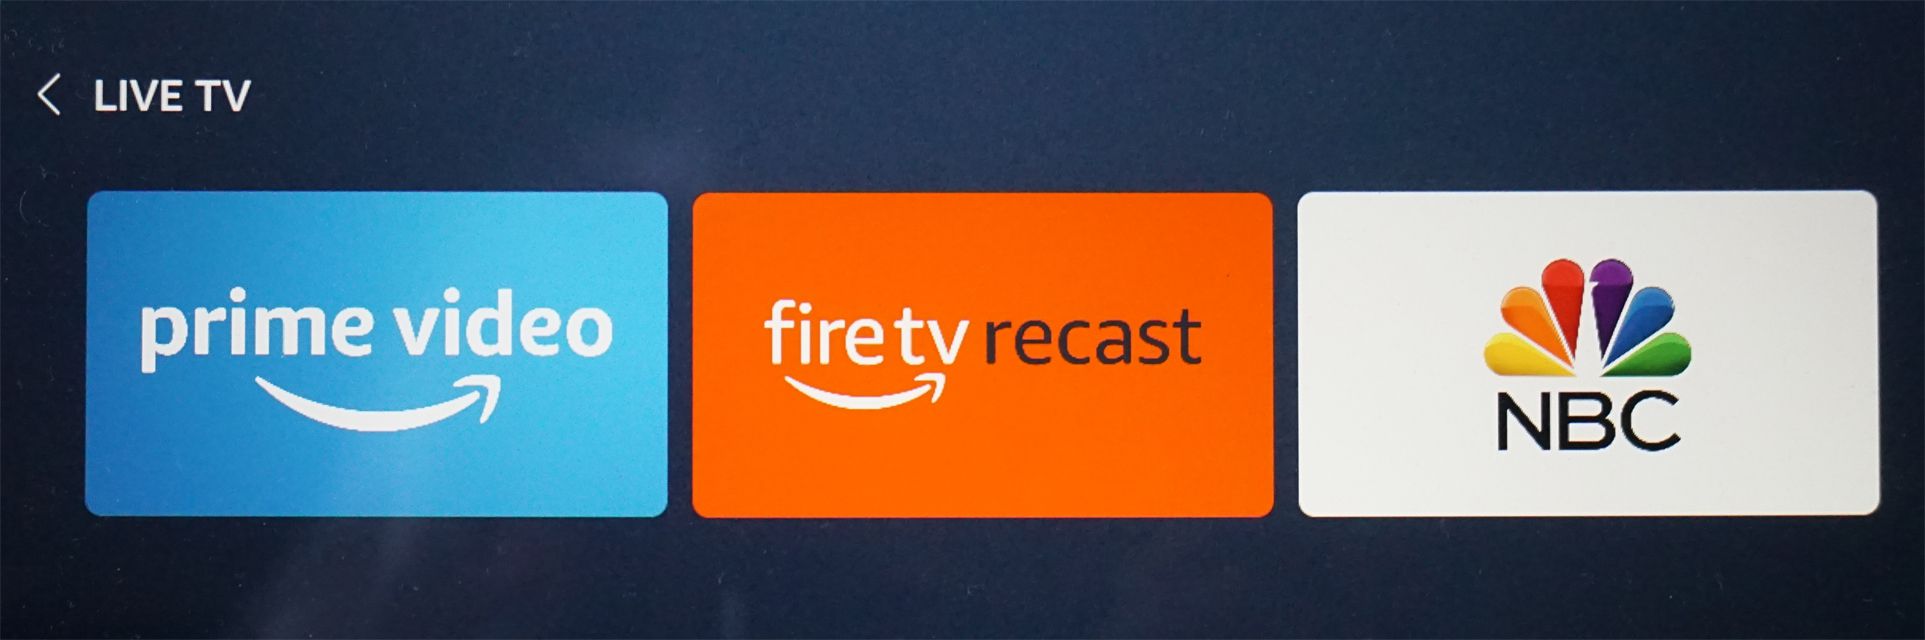 Echo Show - Keuze voor herschikking van Fire TV